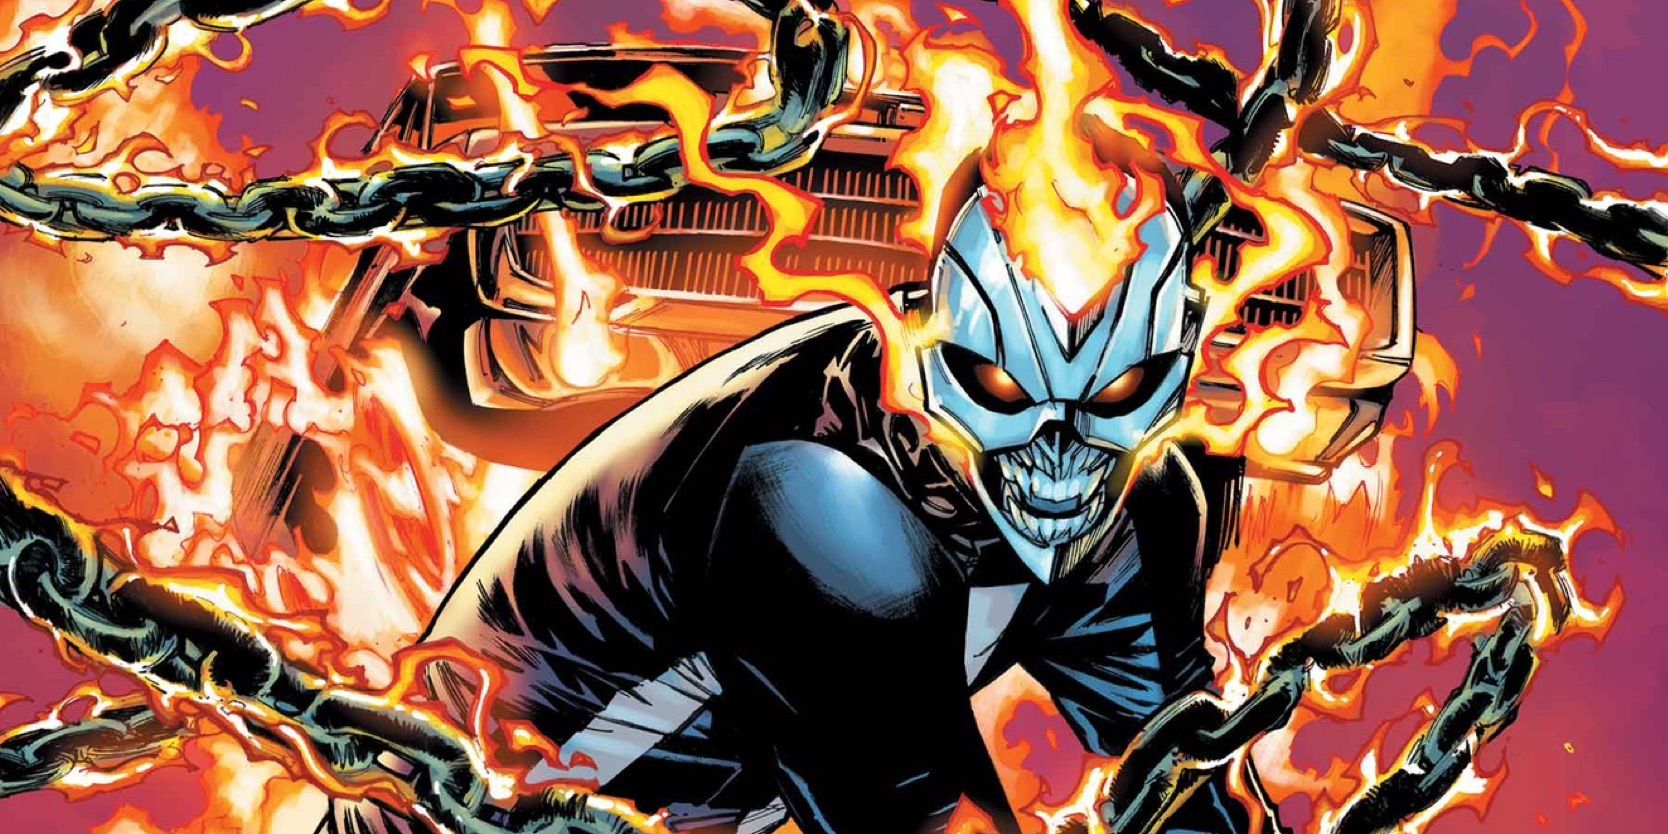 Avengers libera “todo el poder” de su héroe más poderoso cuando Ghost Rider Robbie Reyes finalmente regresa